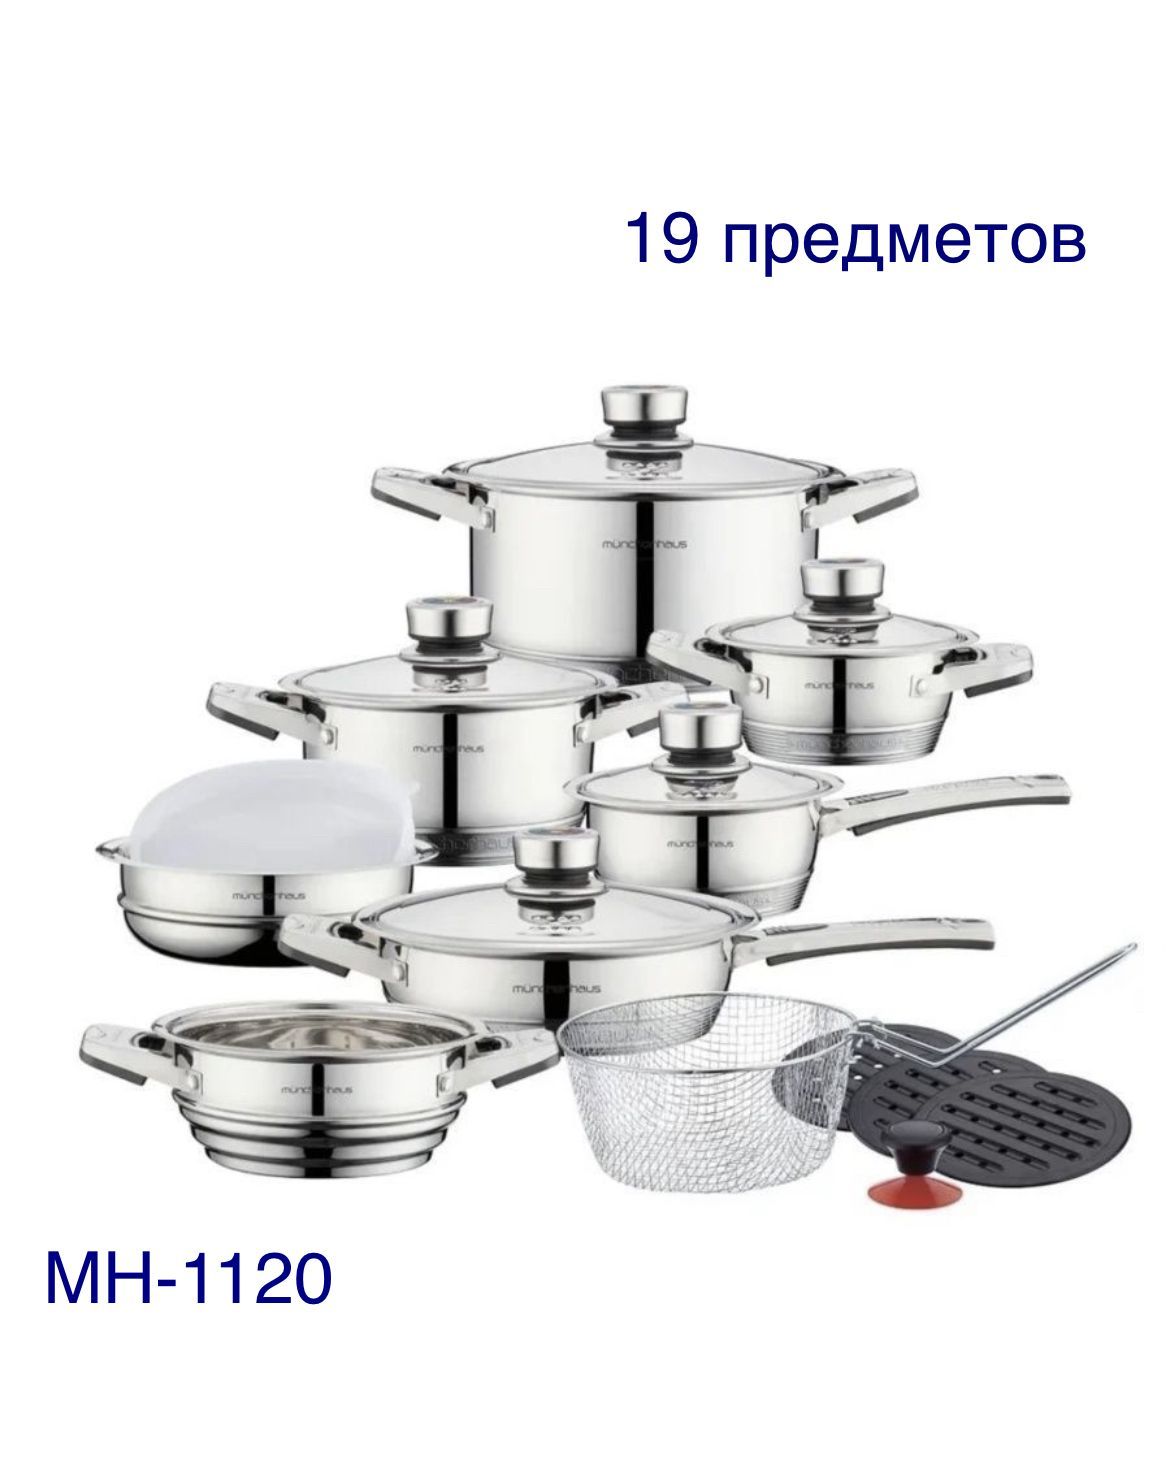 Посуда для приготовления нержавеющая. Набор посуды MUNCHENHAUS MH-1120. Набор кастрюль MH millerhaus 19. Набор посуды MUNCHENHAUS MN-1144. Набор посуды MUNCHENHAUS MH-1120 Германия 19 предметов.